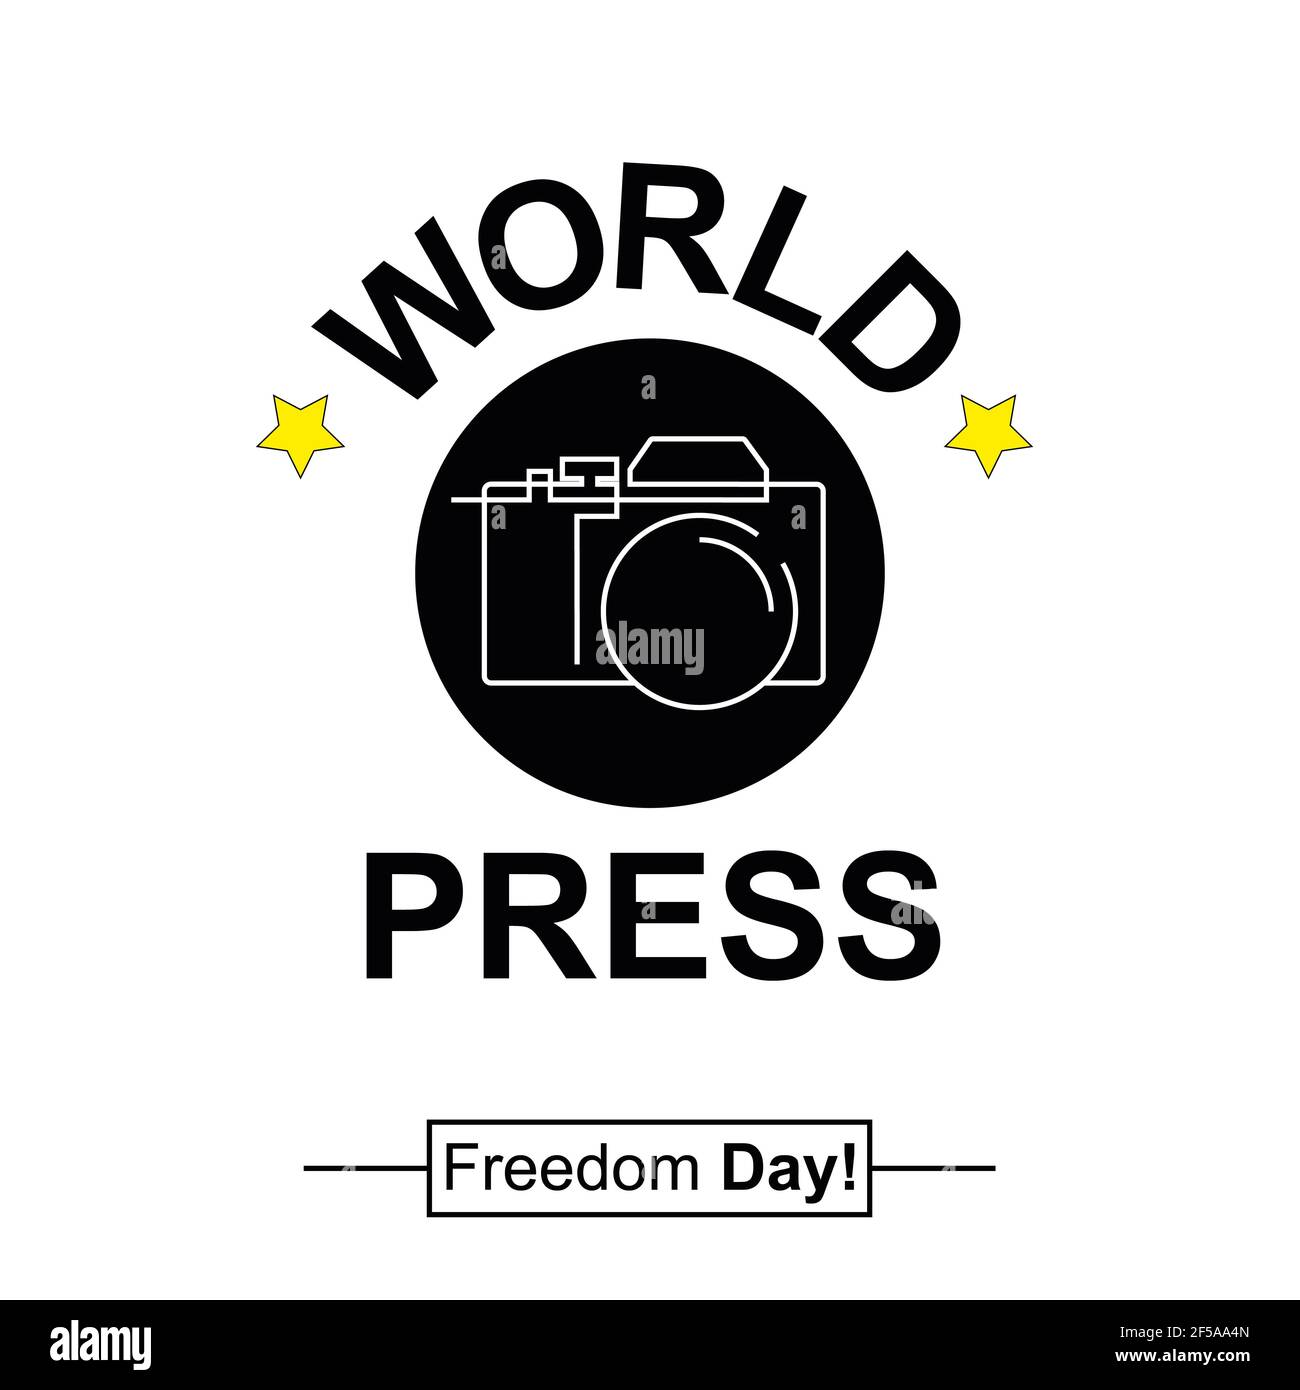 Illustration créative de la Journée mondiale de la liberté de la presse avec concept de design plat. Concevoir avec un appareil photo. 3 mai 2021. Illustration vectorielle. Banque D'Images